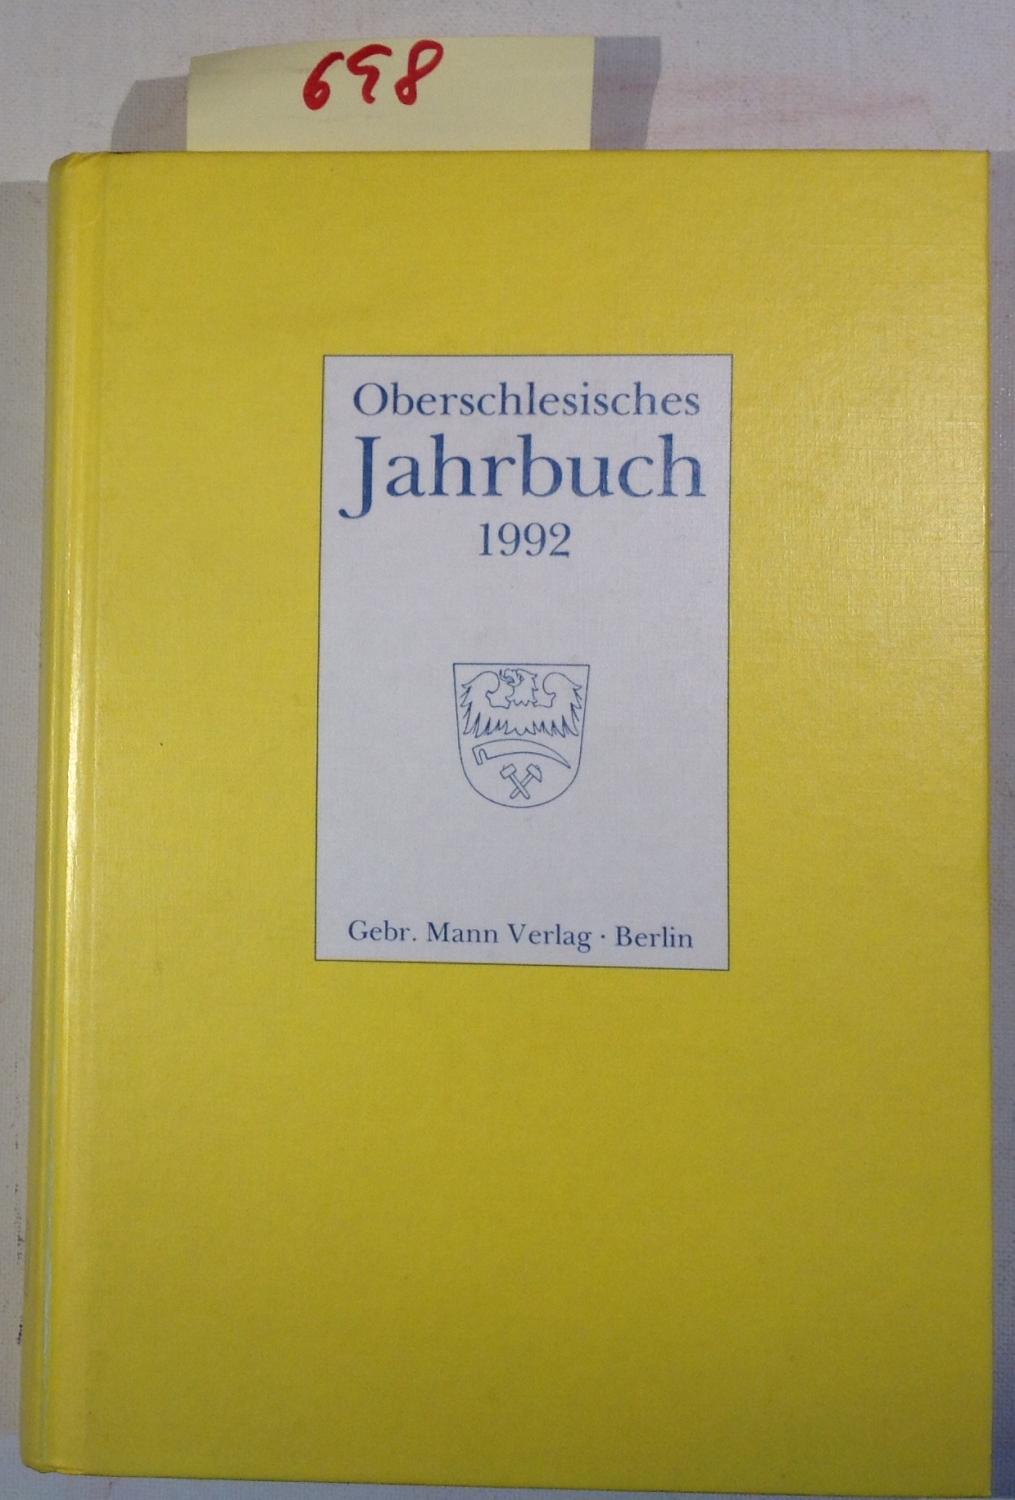 Oberschlesisches Jahrbuch, Band 8, 1992 - Herausgeber: Abmeier, Chmiel, Gussone, Zylla